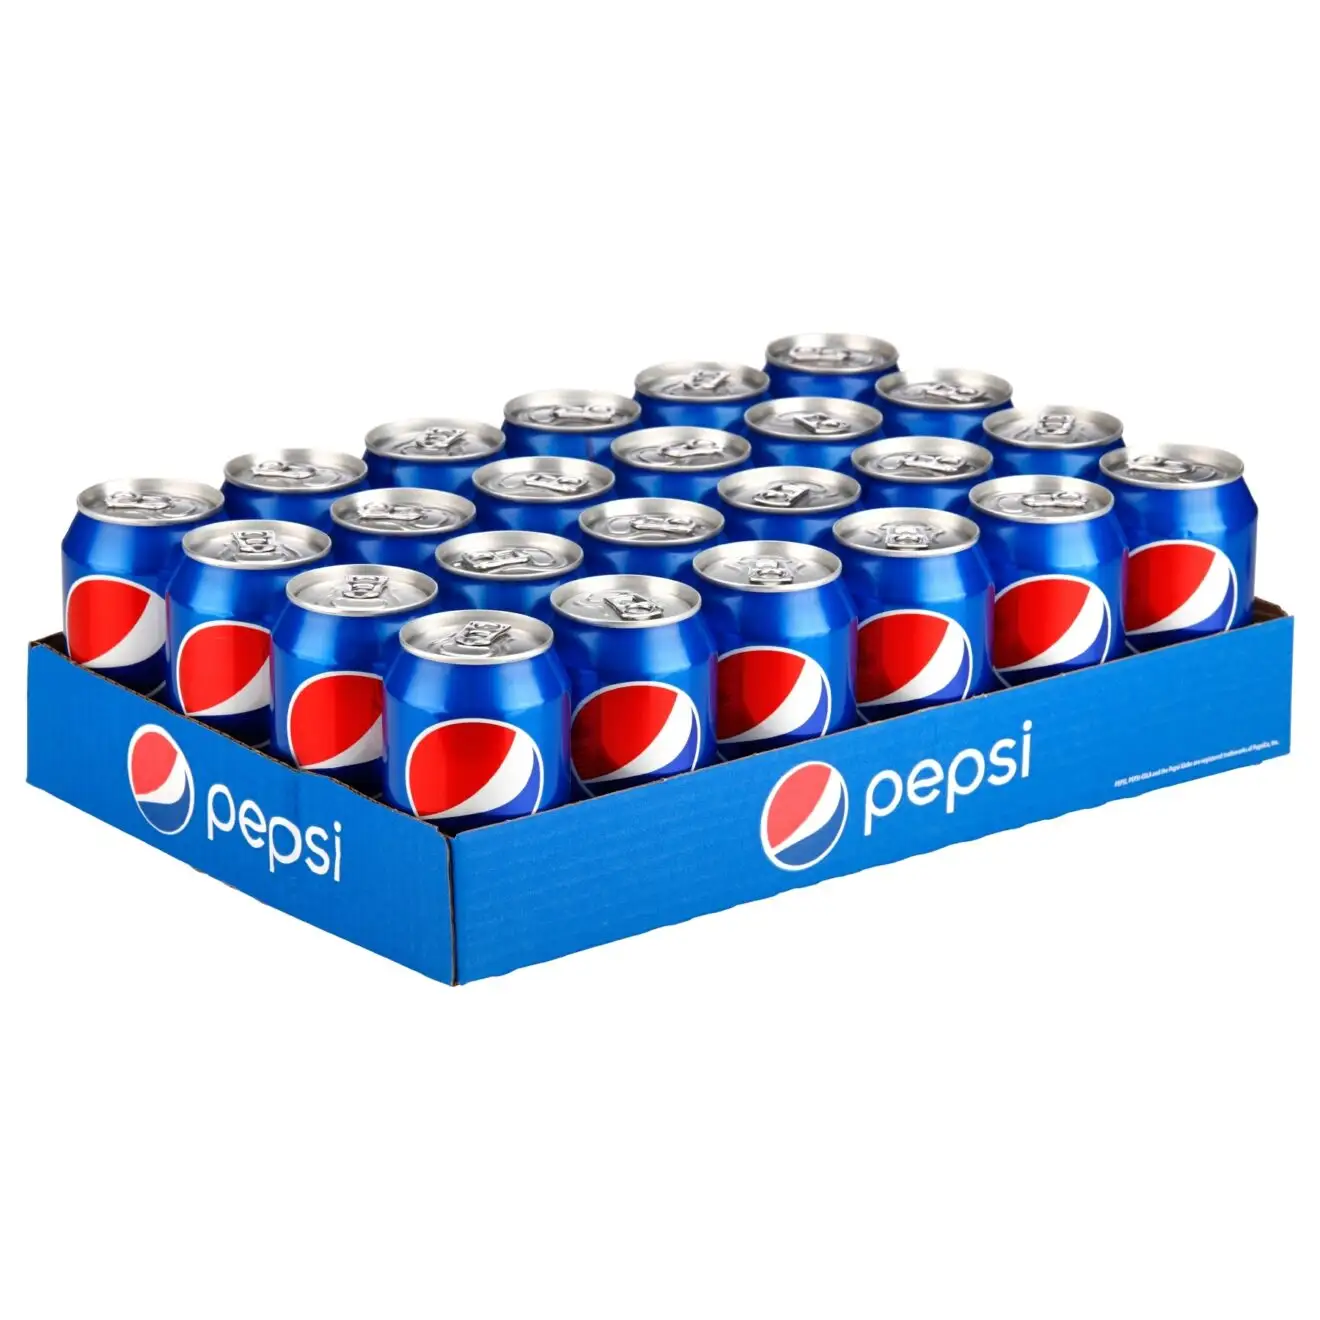 Оригинальный Пепси безалкогольный напиток Пепси 330 мл * 24 банки/пепси кола 0,33 л банка